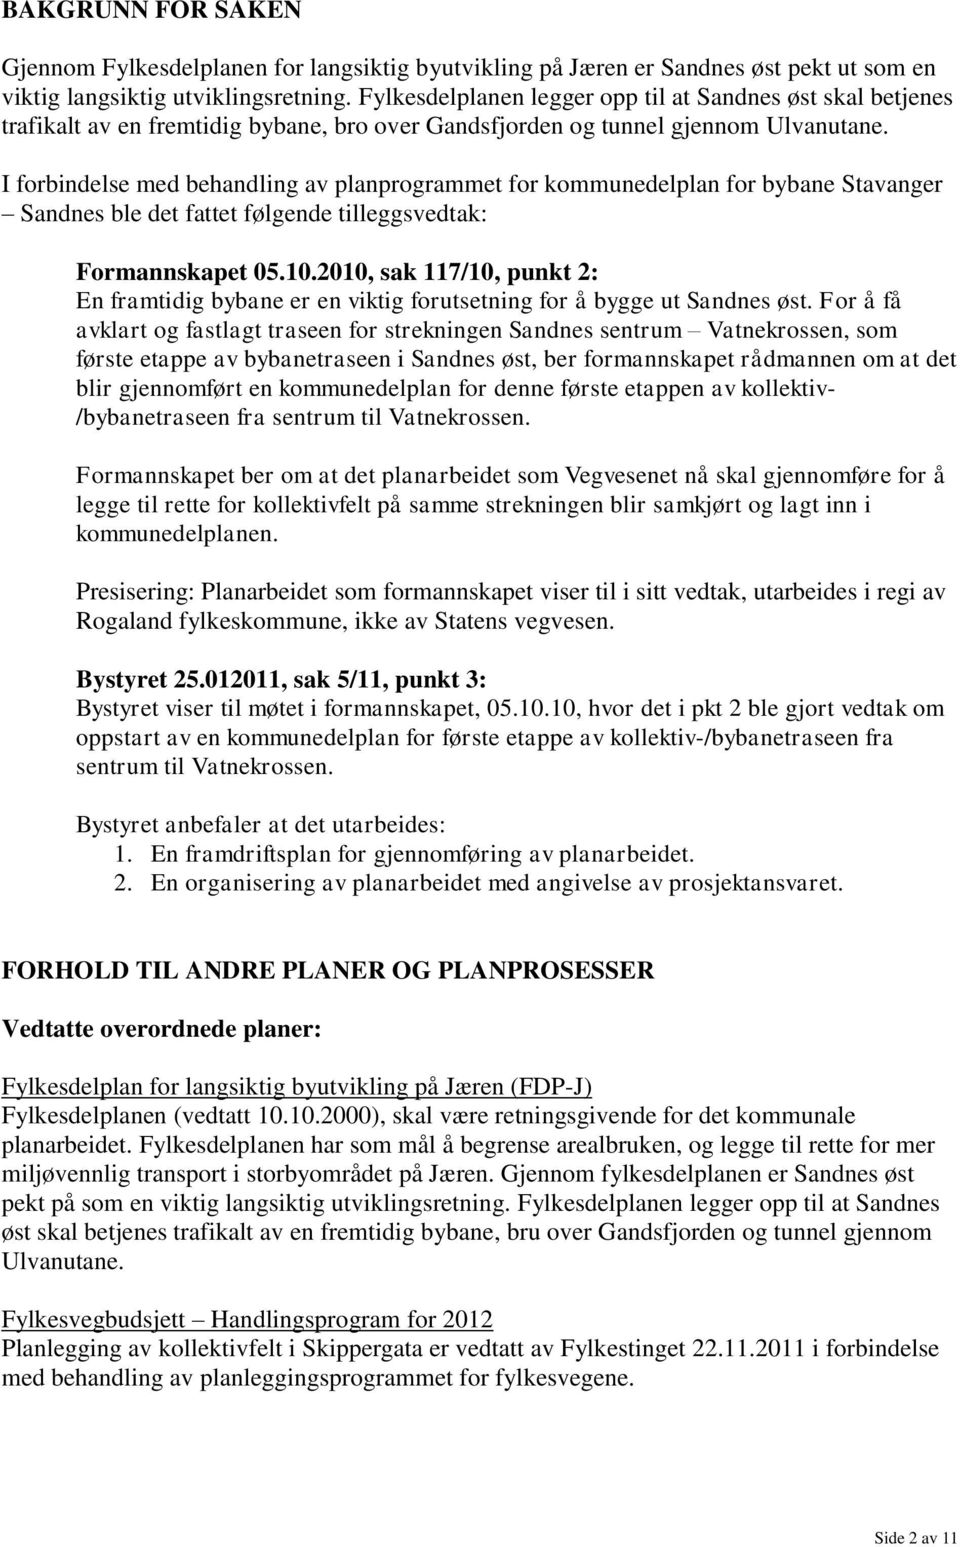 I forbindelse med behandling av planprogrammet for kommunedelplan for bybane Stavanger Sandnes ble det fattet følgende tilleggsvedtak: Formannskapet 05.10.